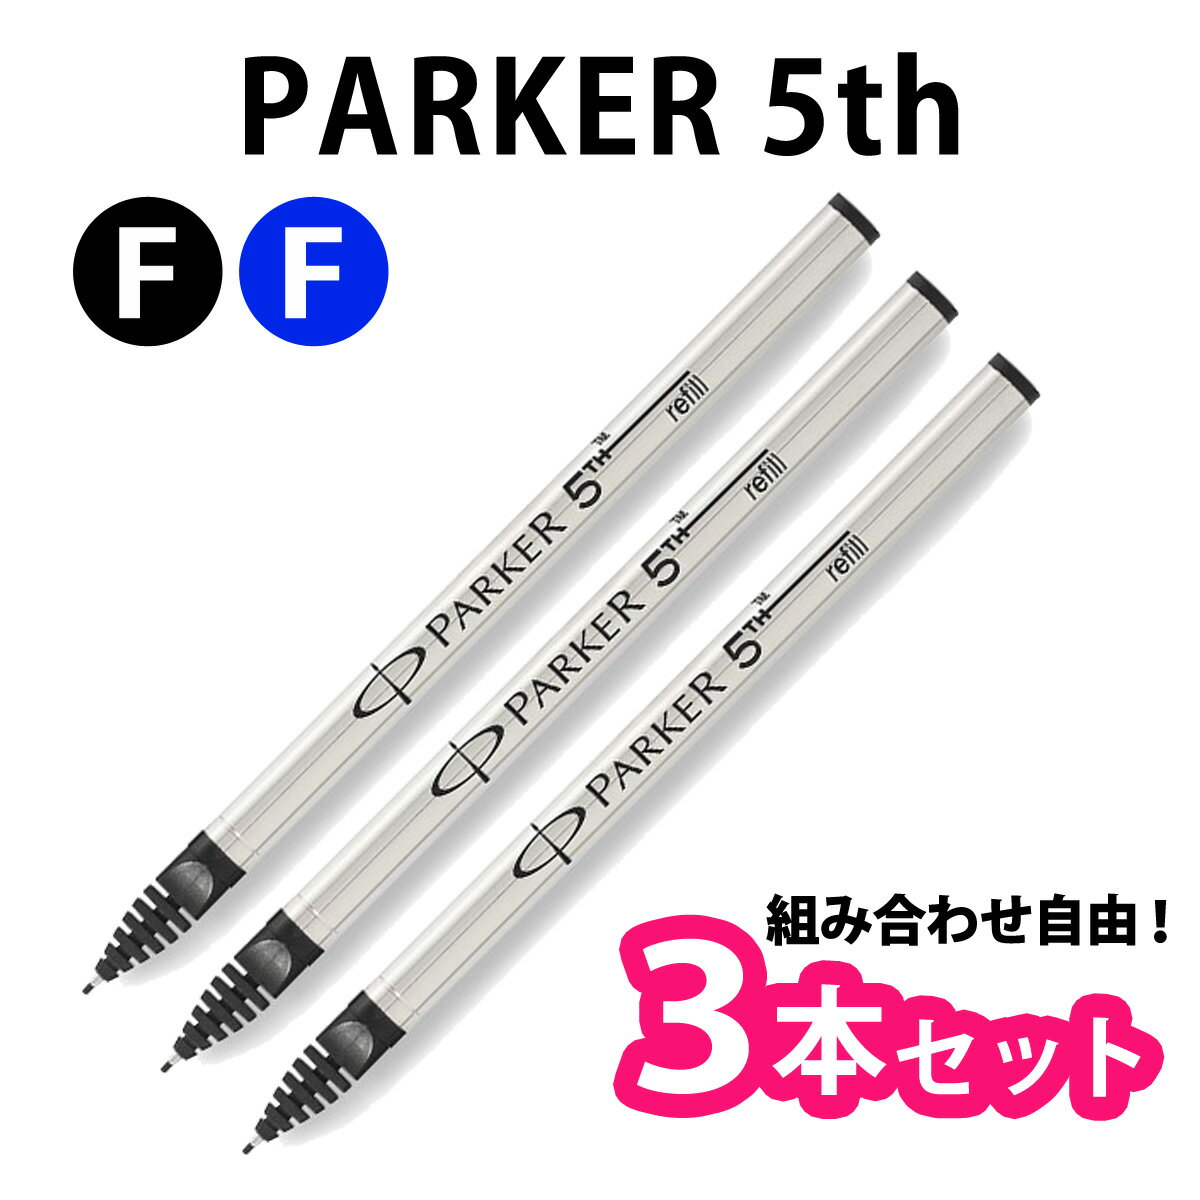 【選べる3本セット】 PARKER パーカー